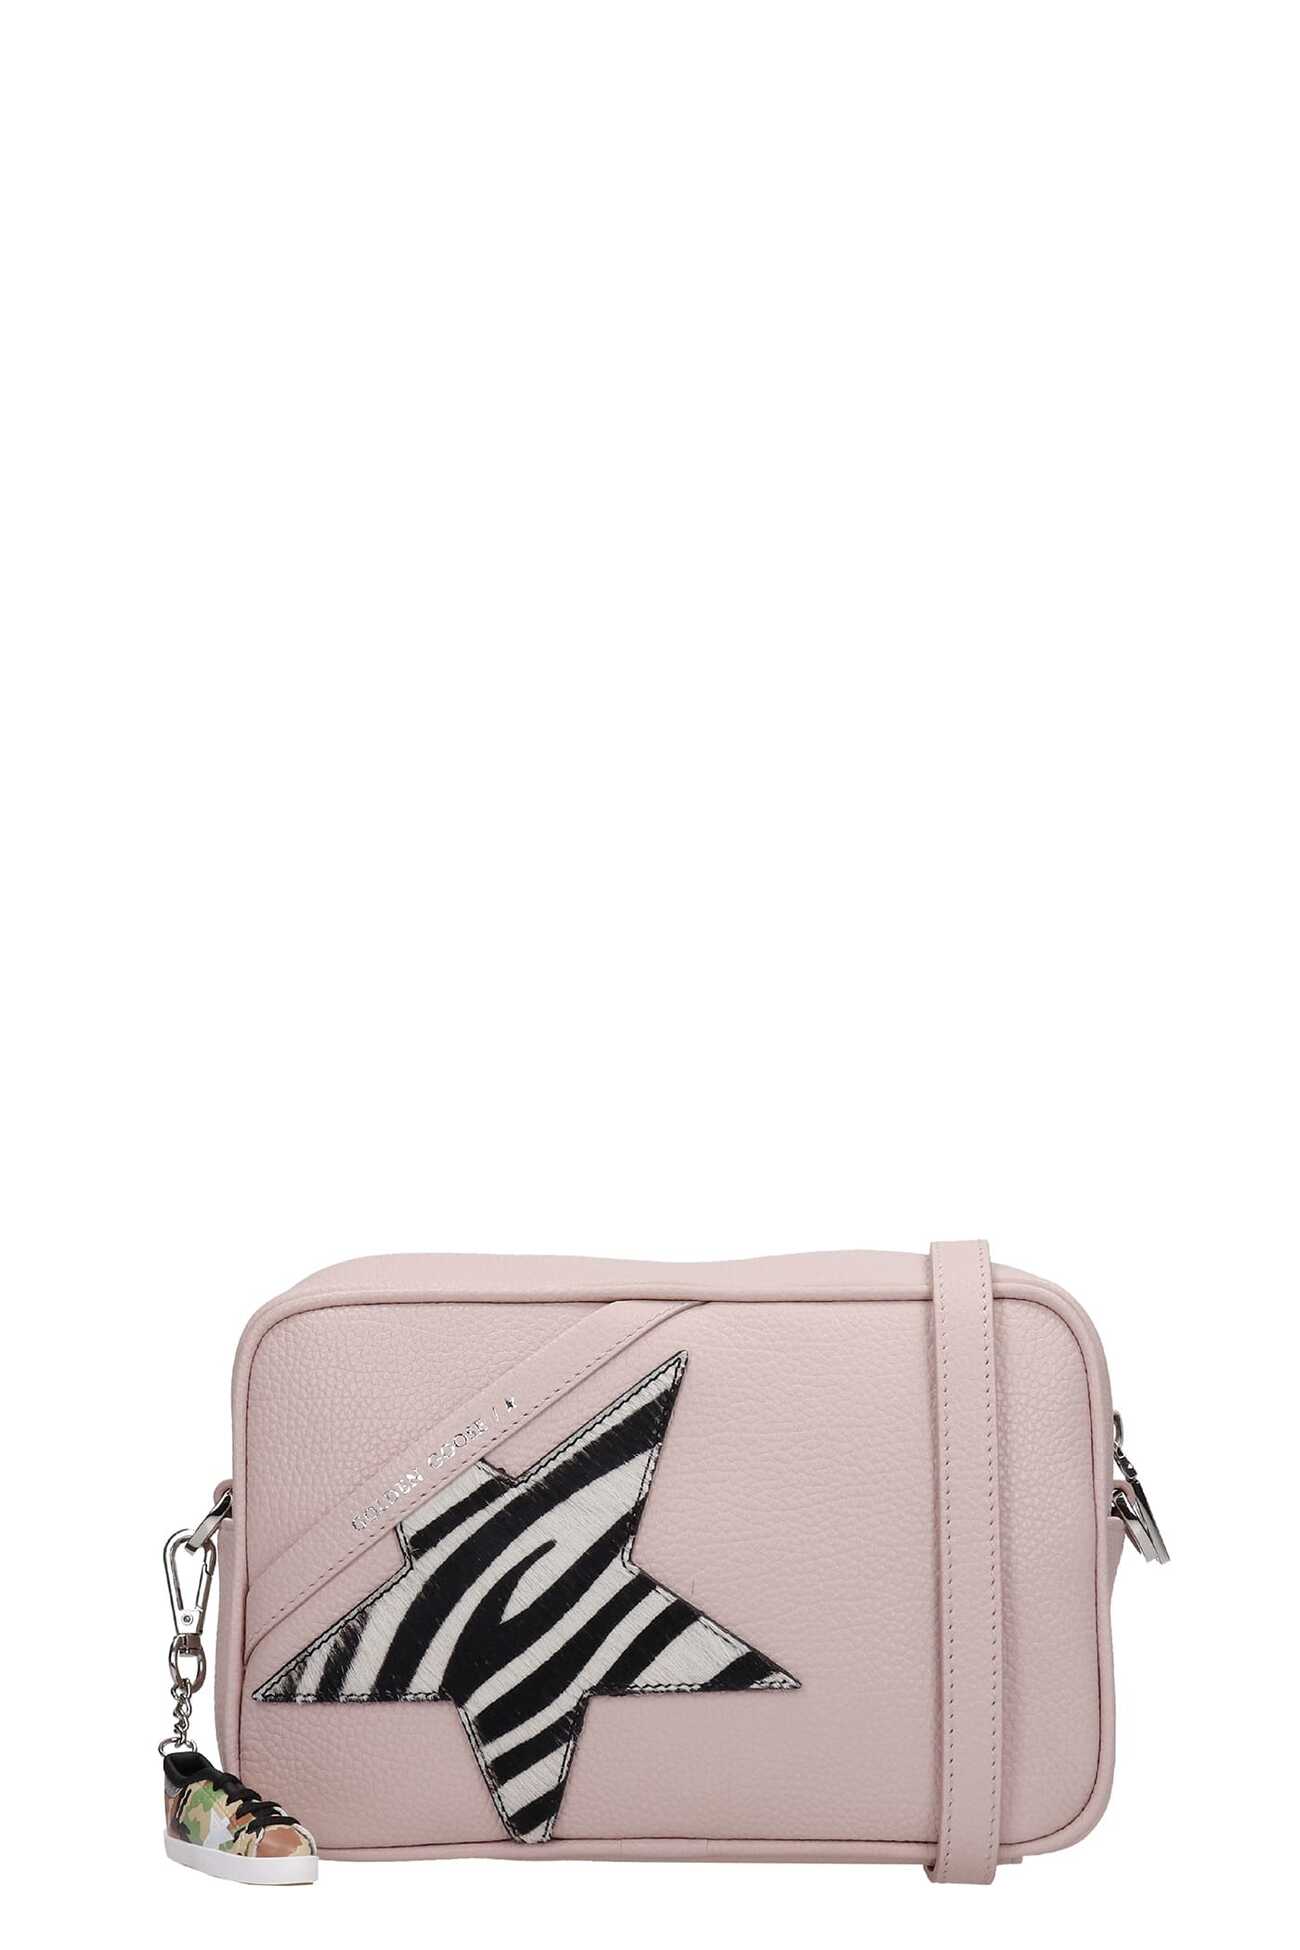 Golden Goose Star Bag Shoulder Bag In Rose-pink Leather